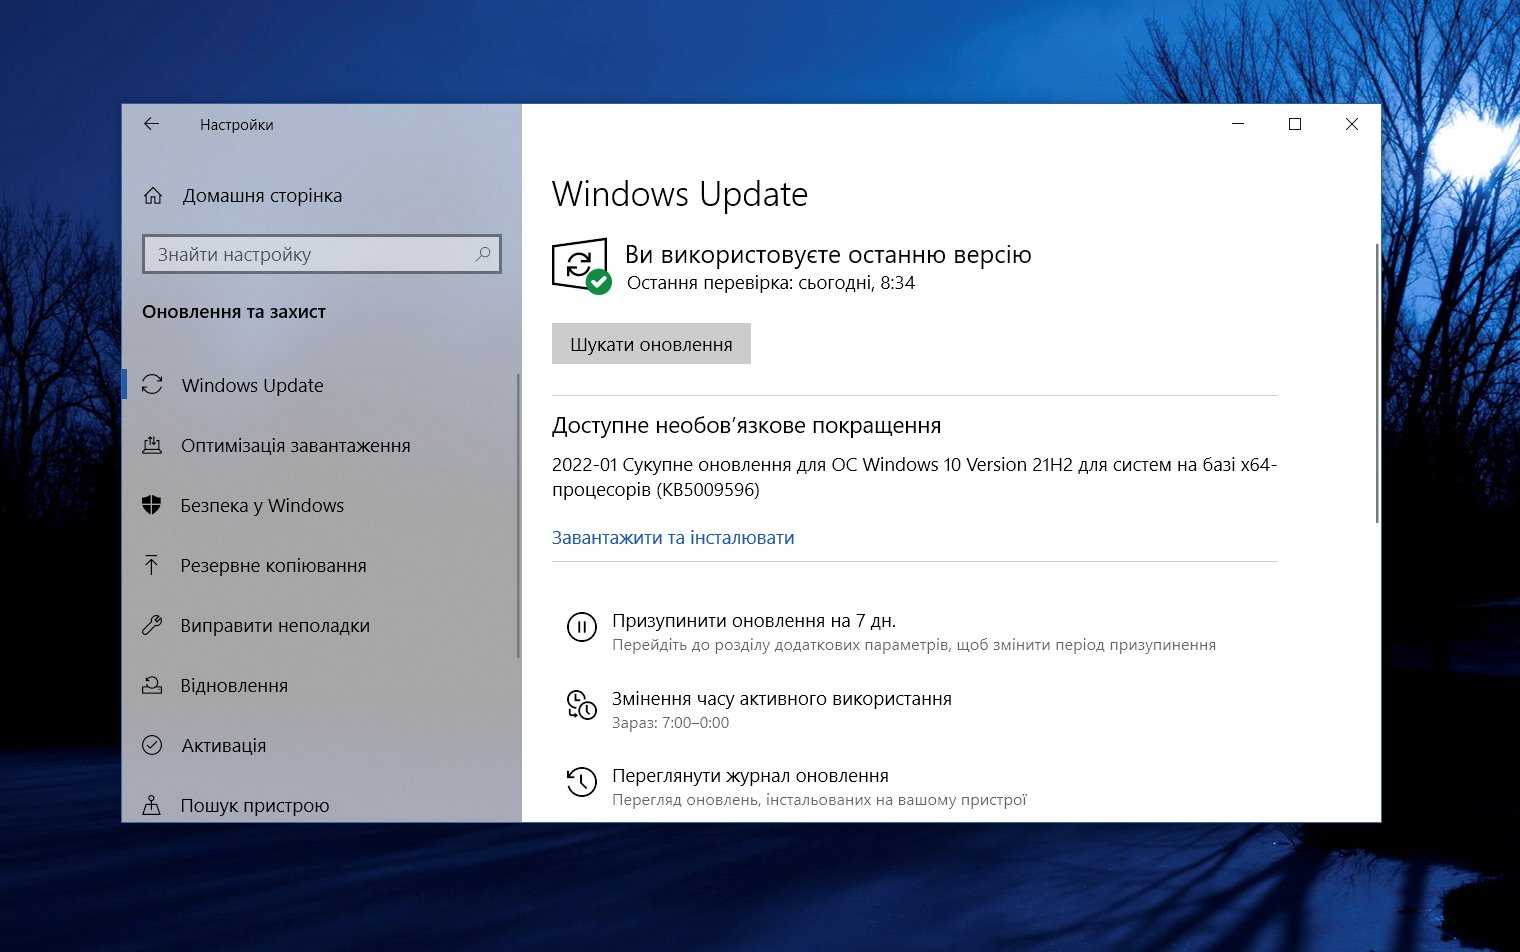 Offline обновление. Необязательные обновления Windows 10. Как отключить автоматическую установку обновлений Windows 10.